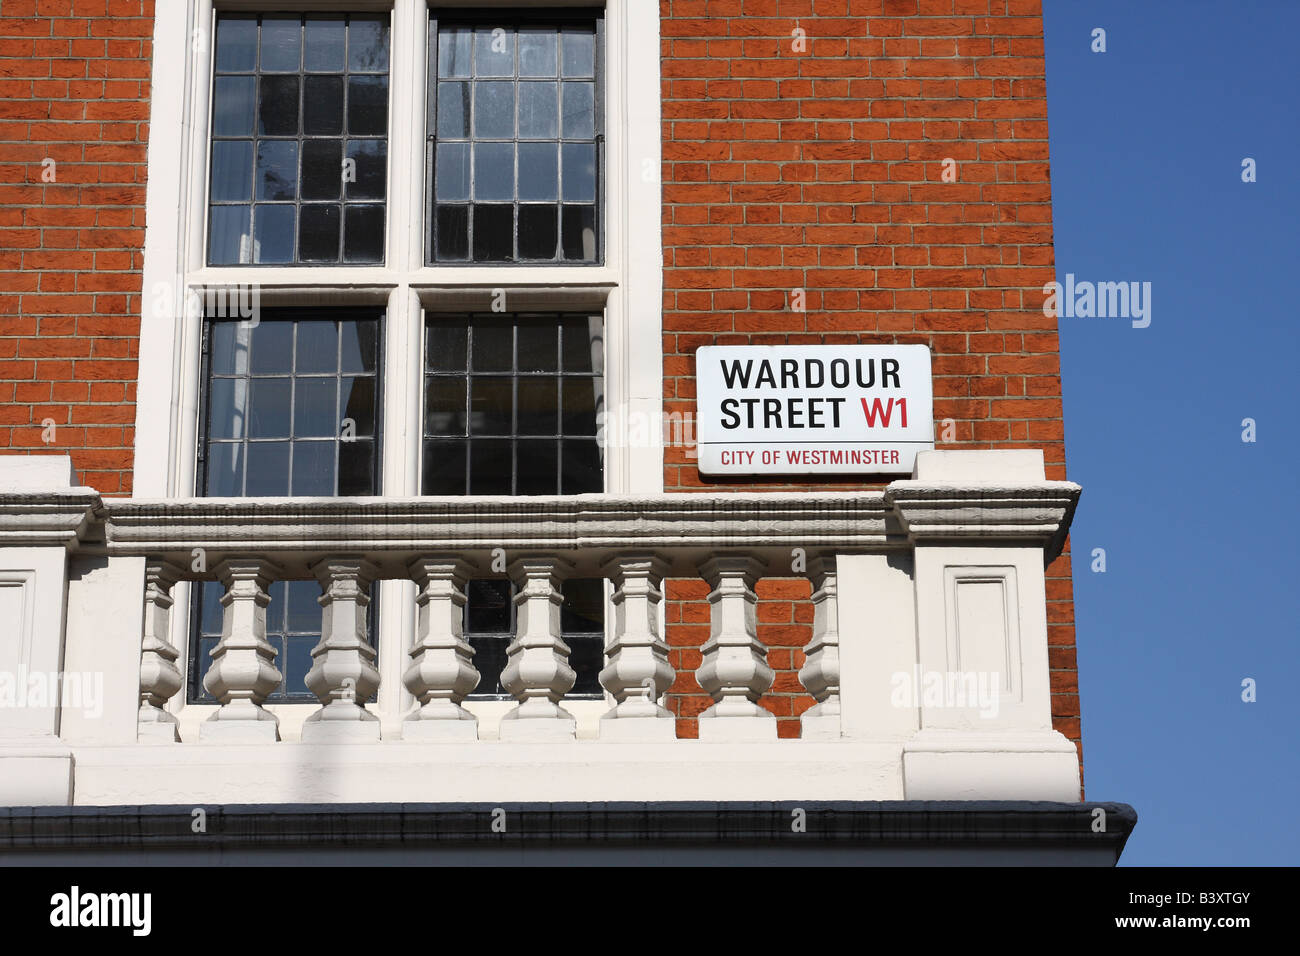 Pour une plaque de rue Wardour Street W1, Westminster, Londres, Angleterre, Royaume-Uni Banque D'Images